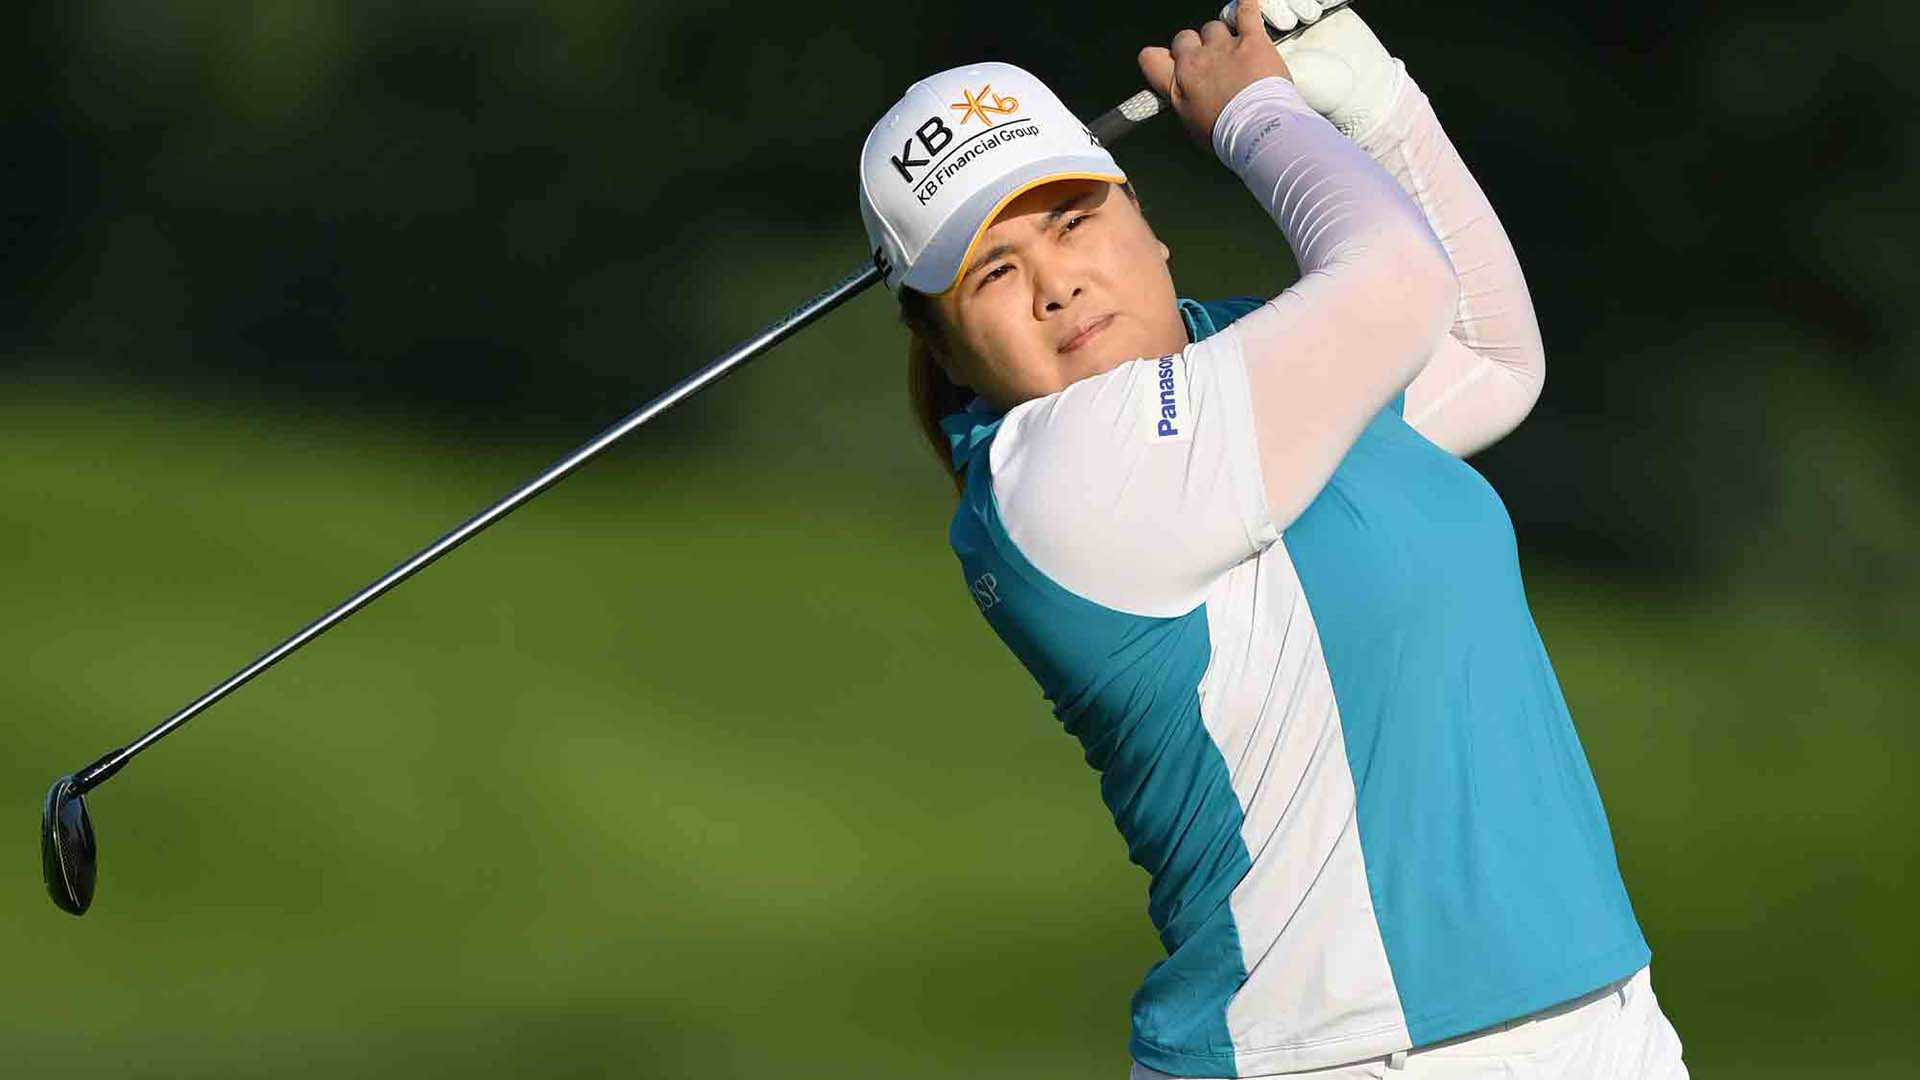 Park Inbee muốn trở thành golfer đầu tiên hoàn thành trọn bộ Grand Slam của golf Nữ - Ảnh 1.